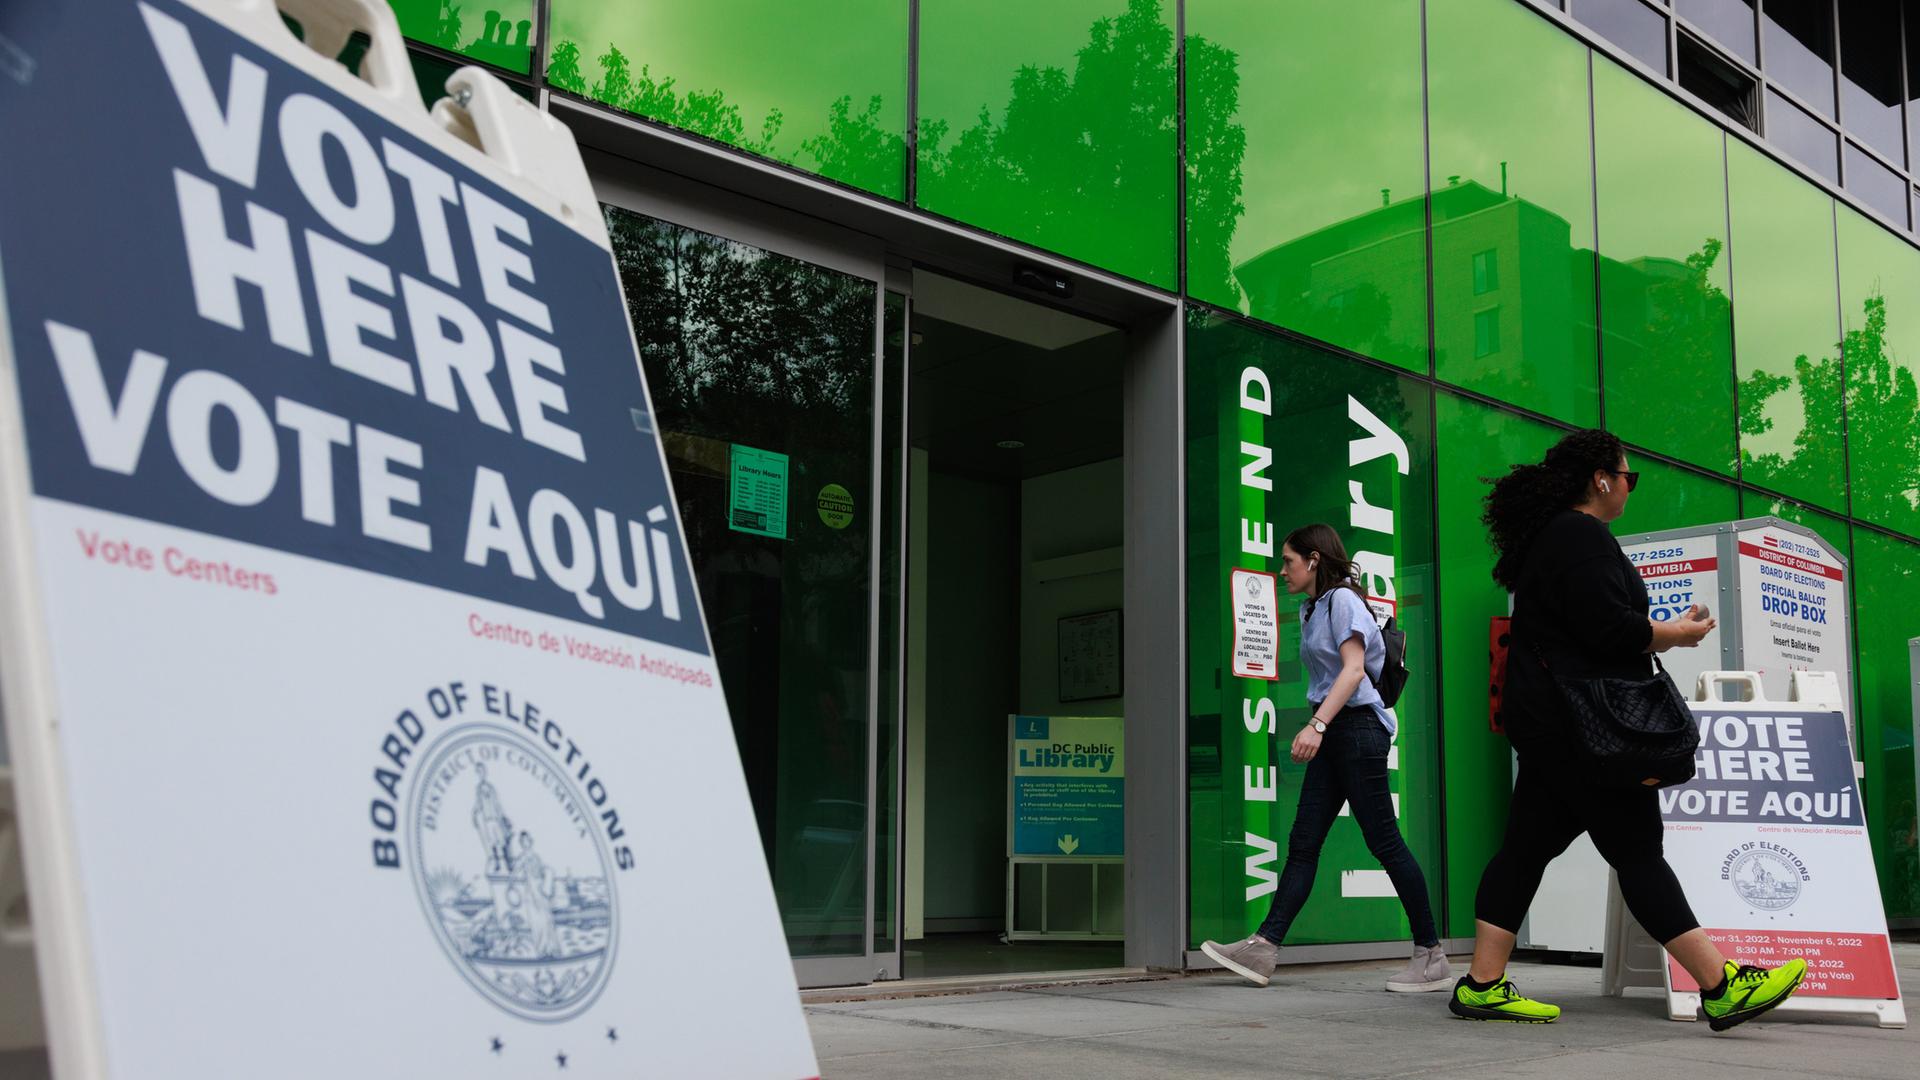 Ein Schild weist auf ein Wahllokal in Washington für die Midterms 2022 in den USA hin 